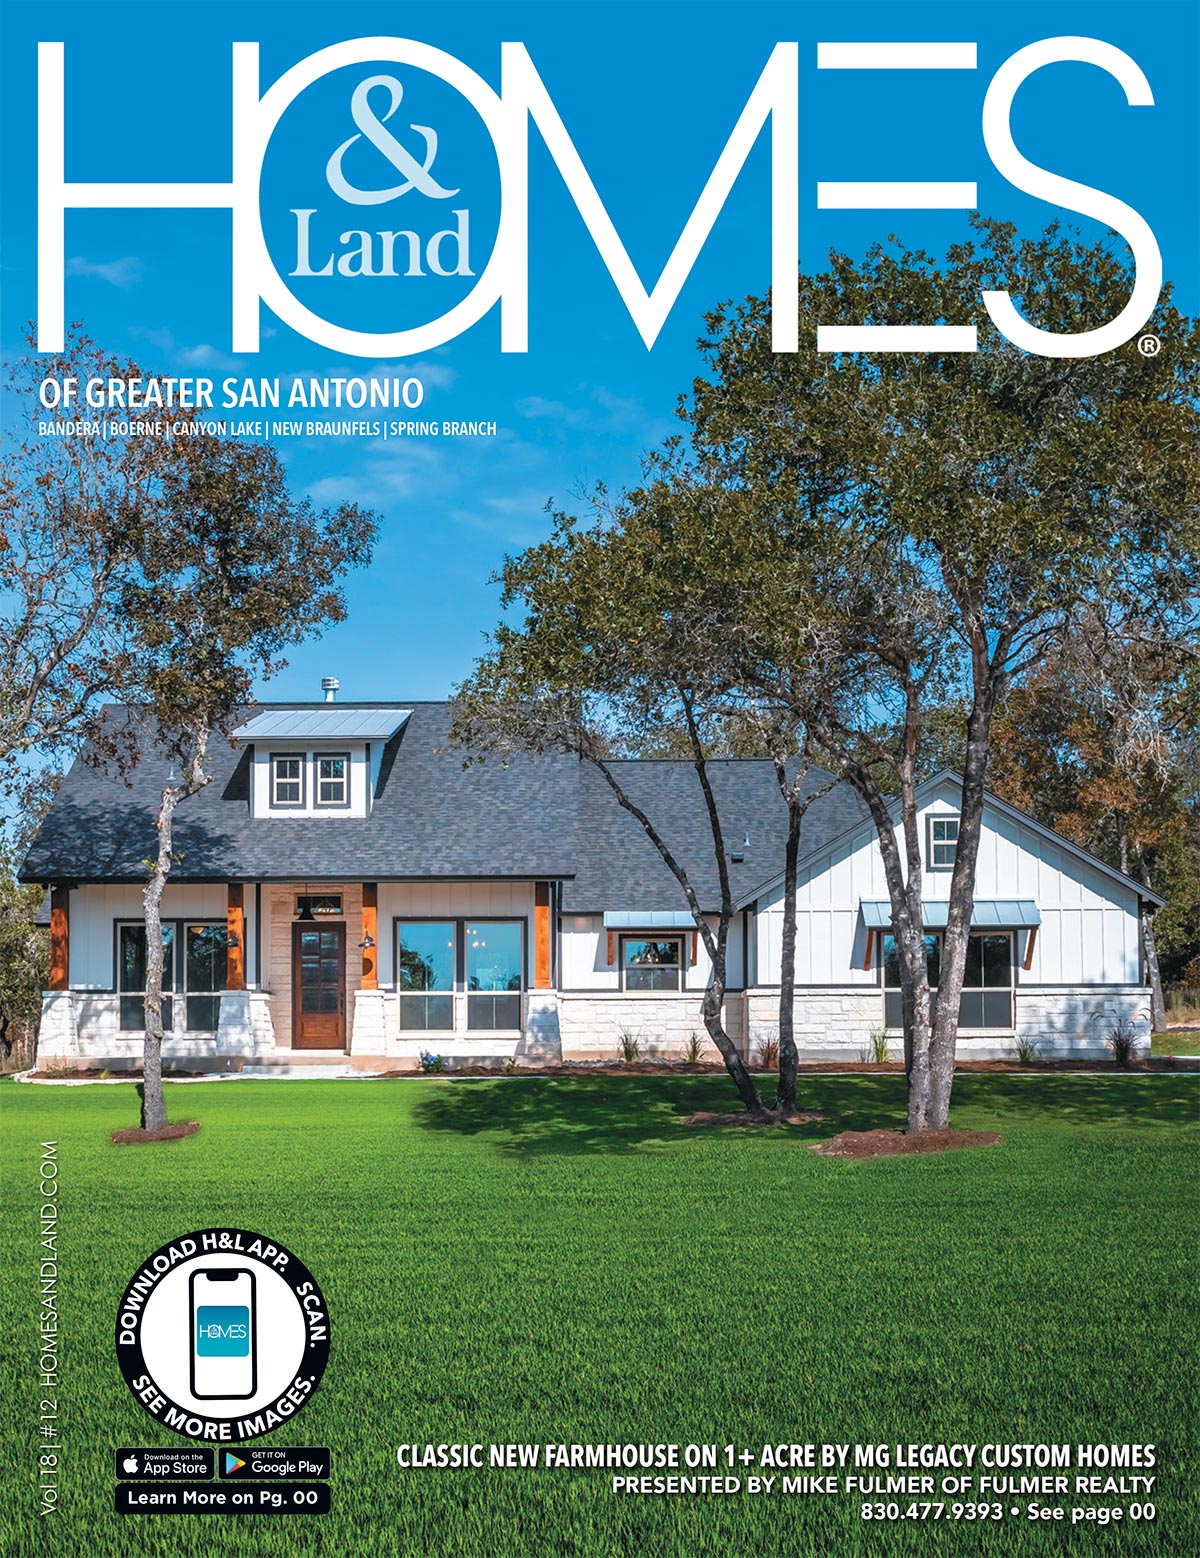 Homes & Land Magazine Cover Nov 2020